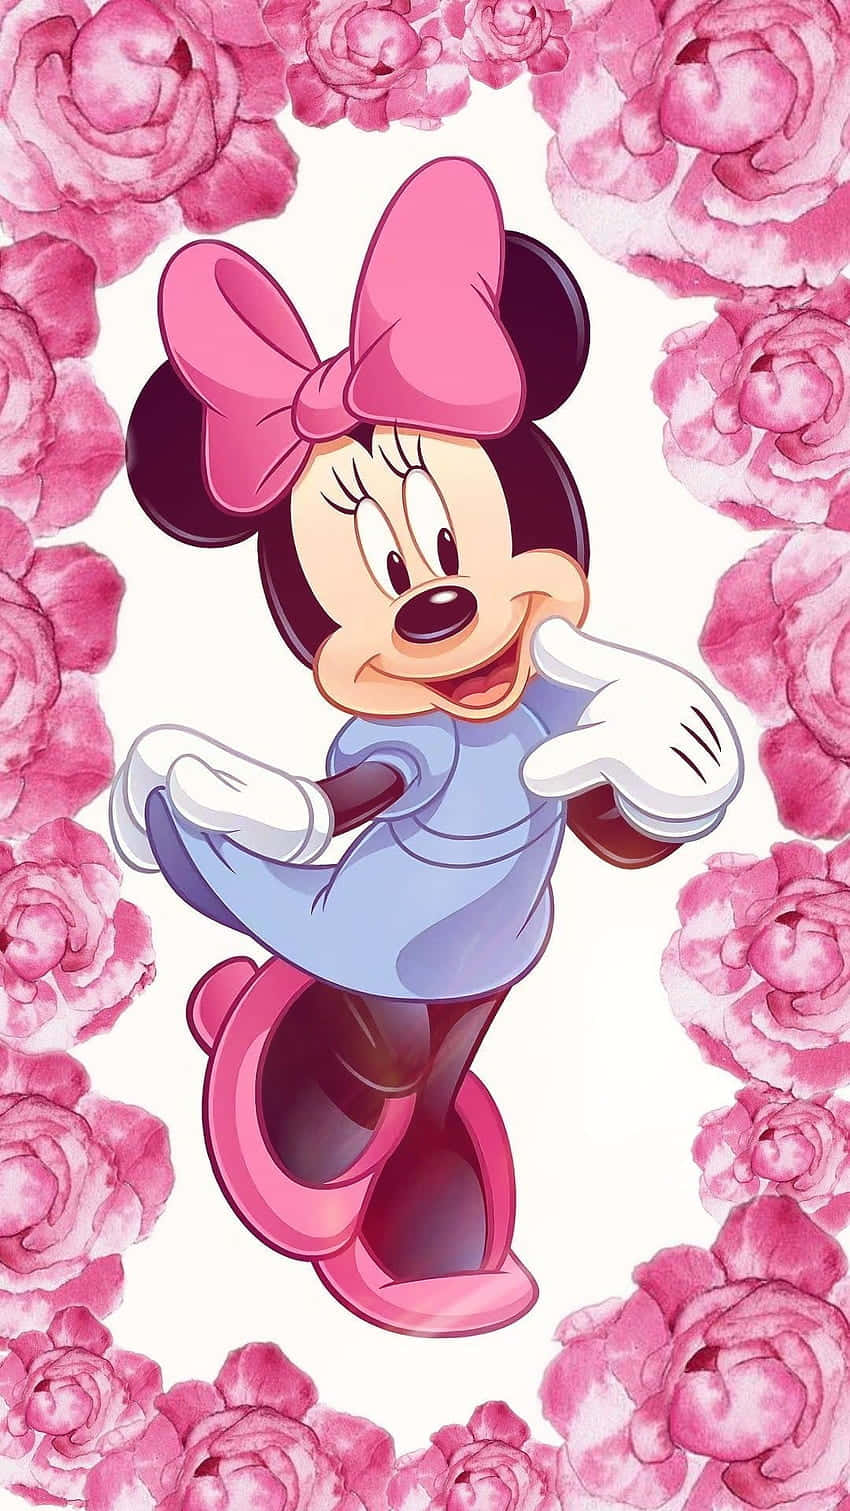 Feiernsie Mit Minnie Maus In Ihrem Charakteristischen Pinken Outfit Wallpaper